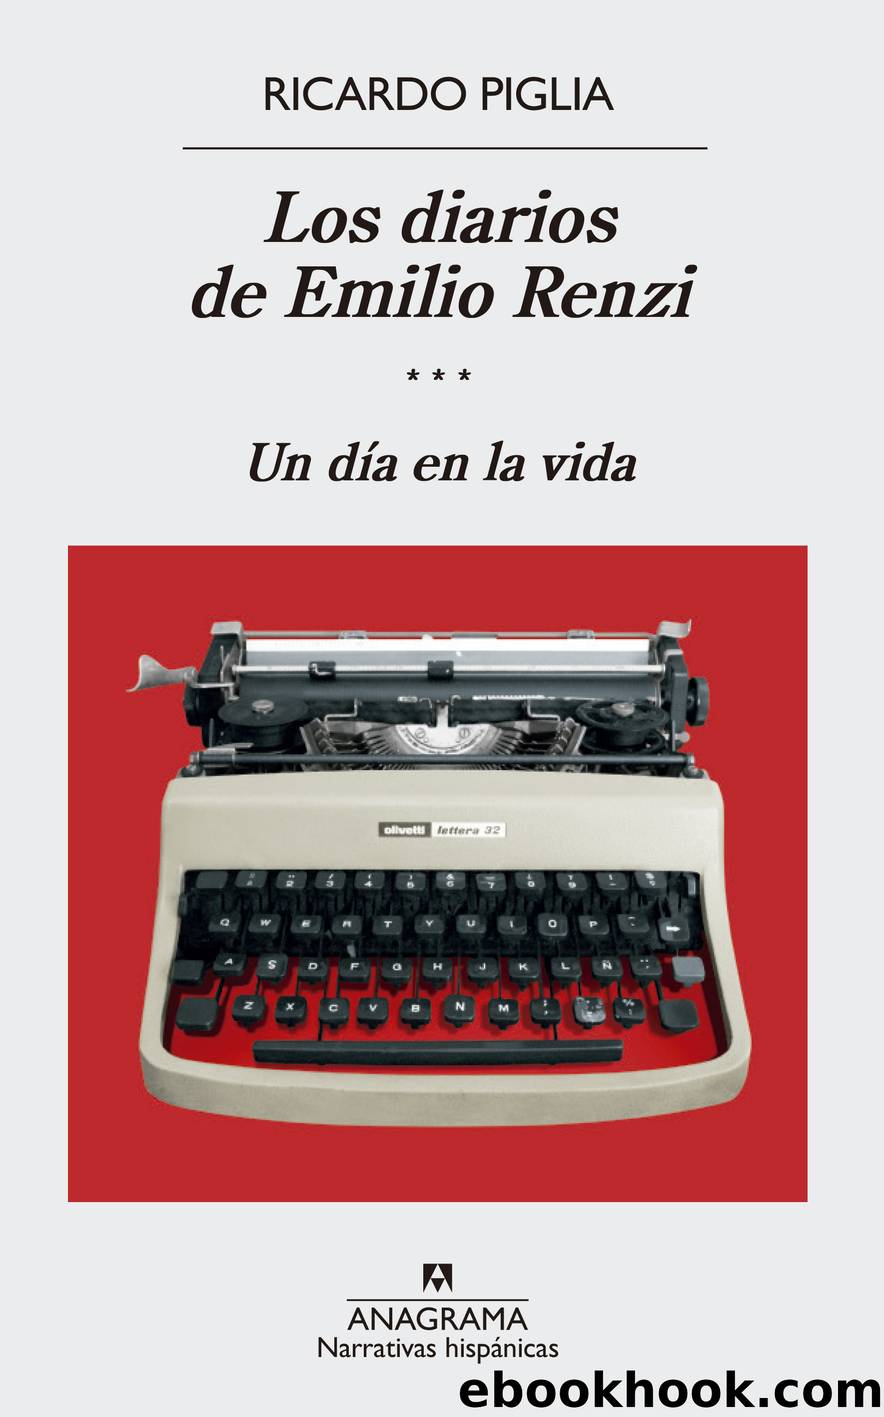 Los diarios de Emilio Renzi (III) by Ricardo Piglia